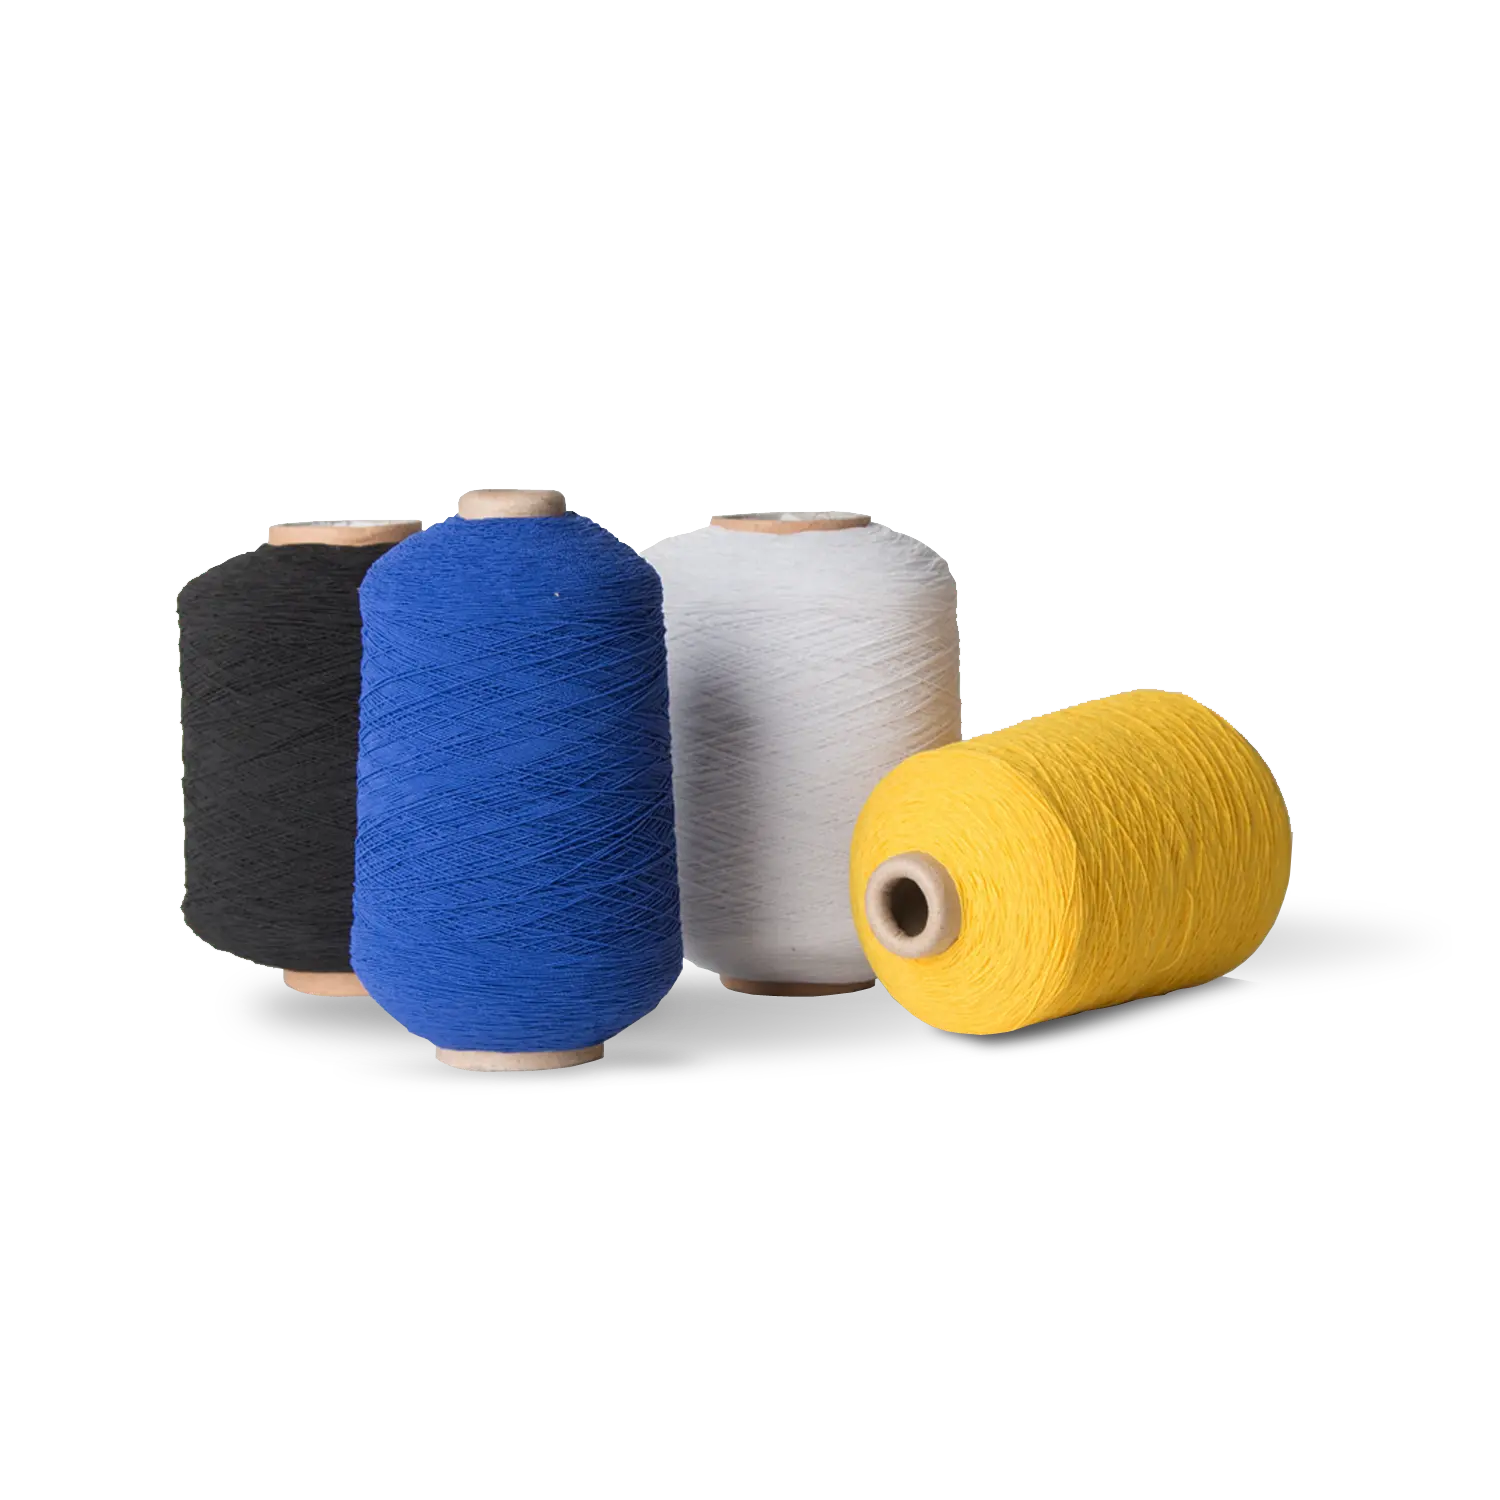 Kauçuk boyalı Filament tipi ile kaplı % 840140140 elastik iplik için yüksek mukavemetli Polyester Spandex kaplı iplik DCY örme çorap